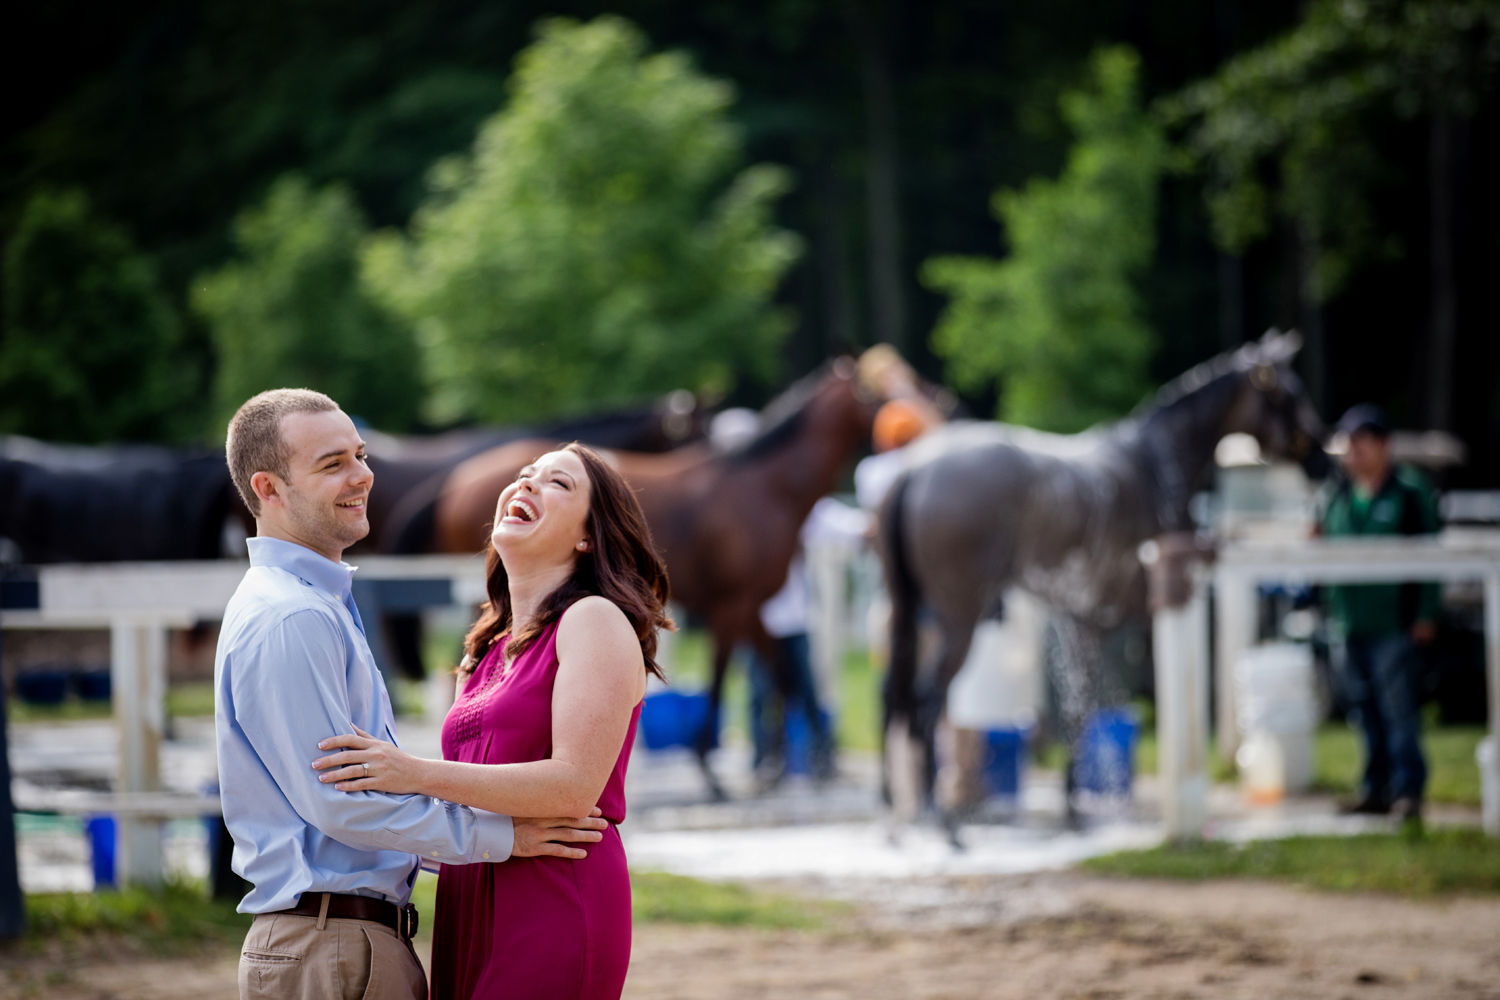 Saratoga NY Engagement and Horse Photography20.jpg